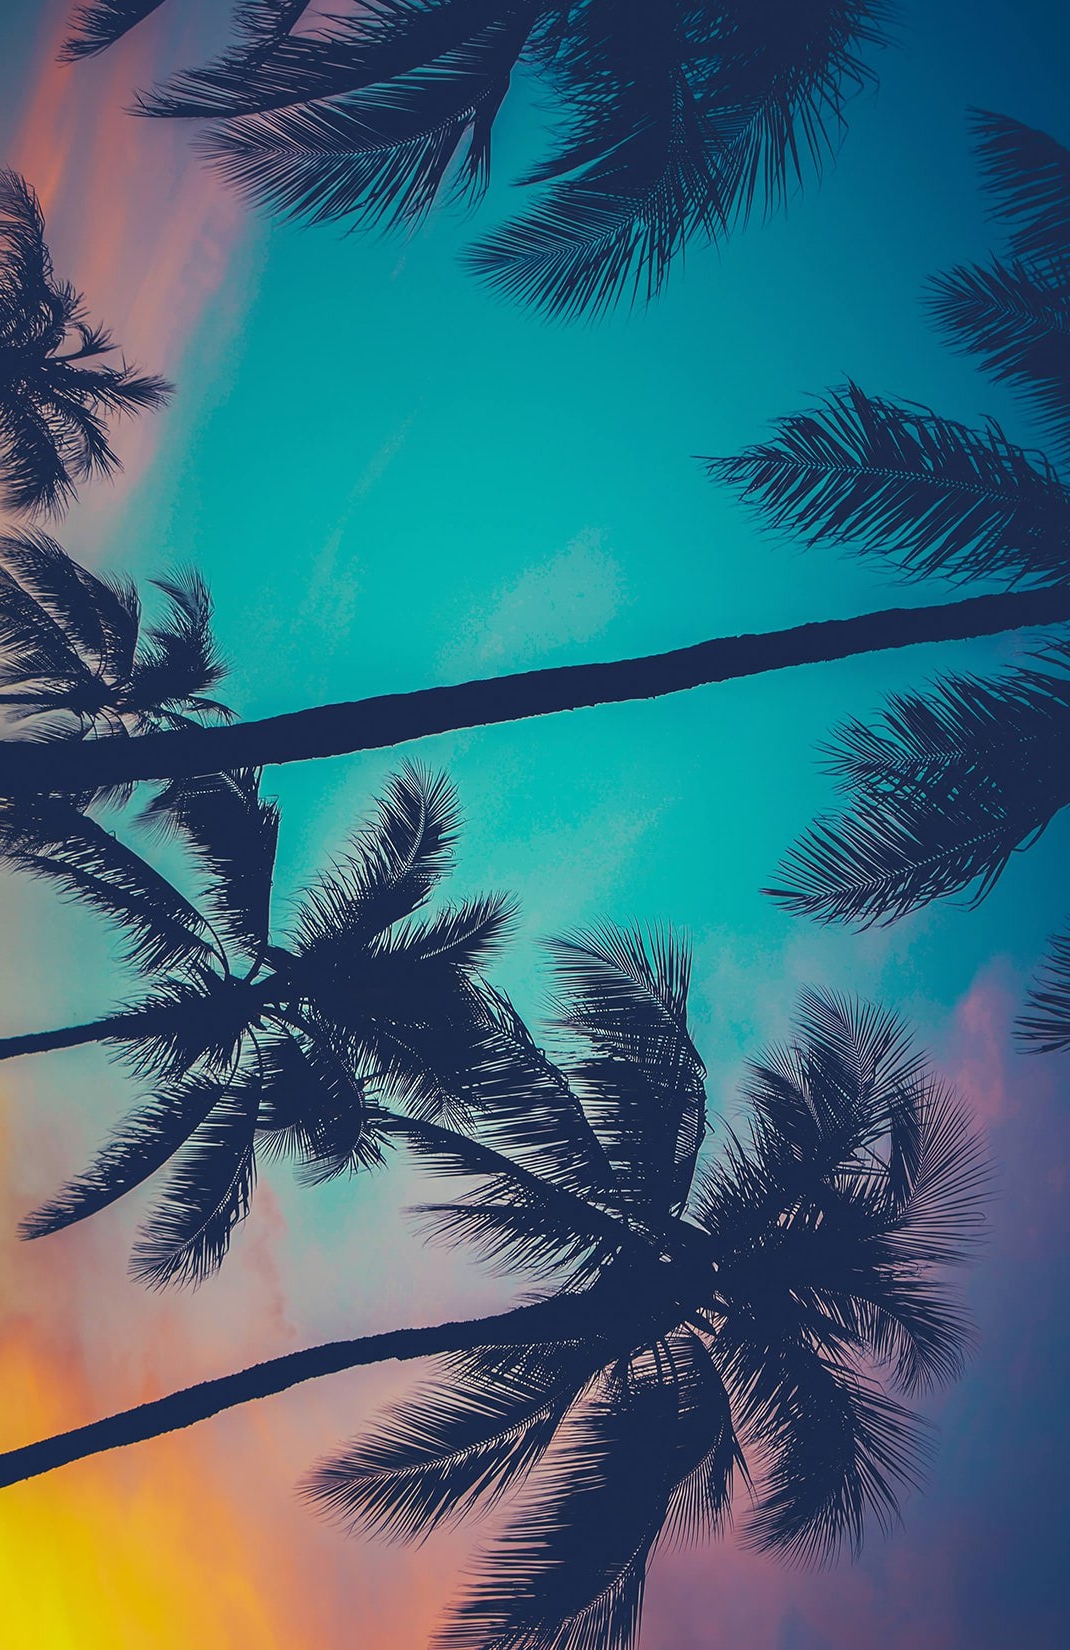 hawaii-palm-trees-mural-beach-plain.jpg